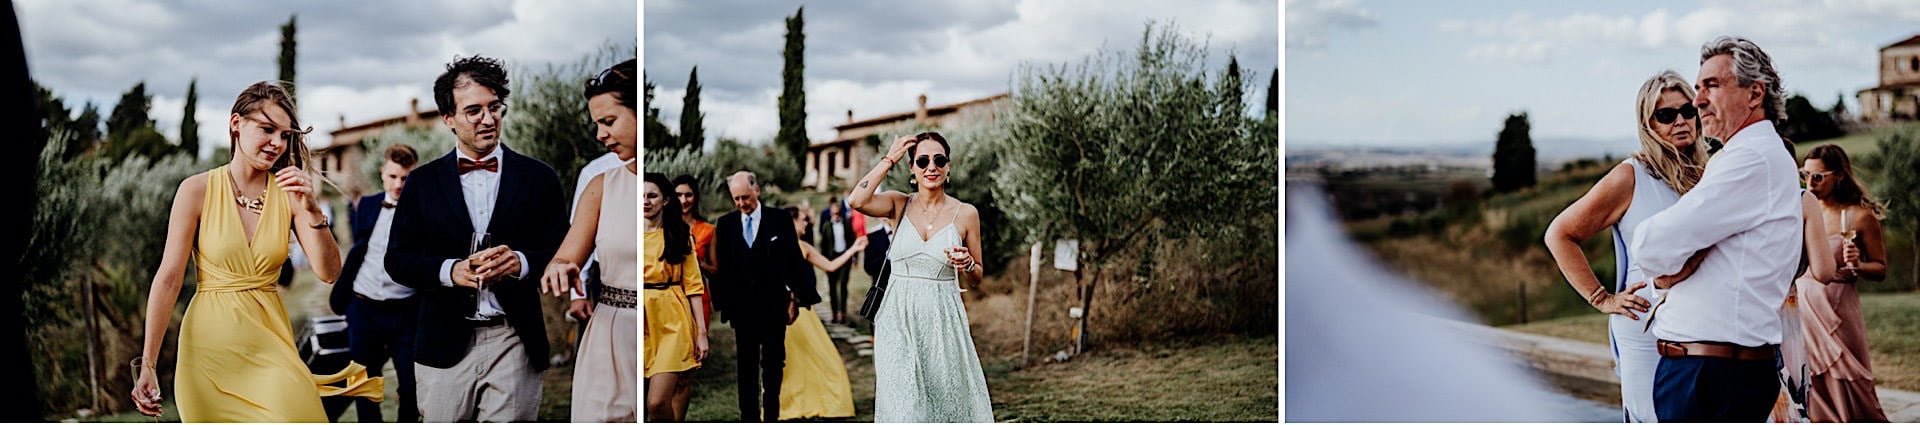 Tuscany Countryside Wedding at Lazy Olive 59